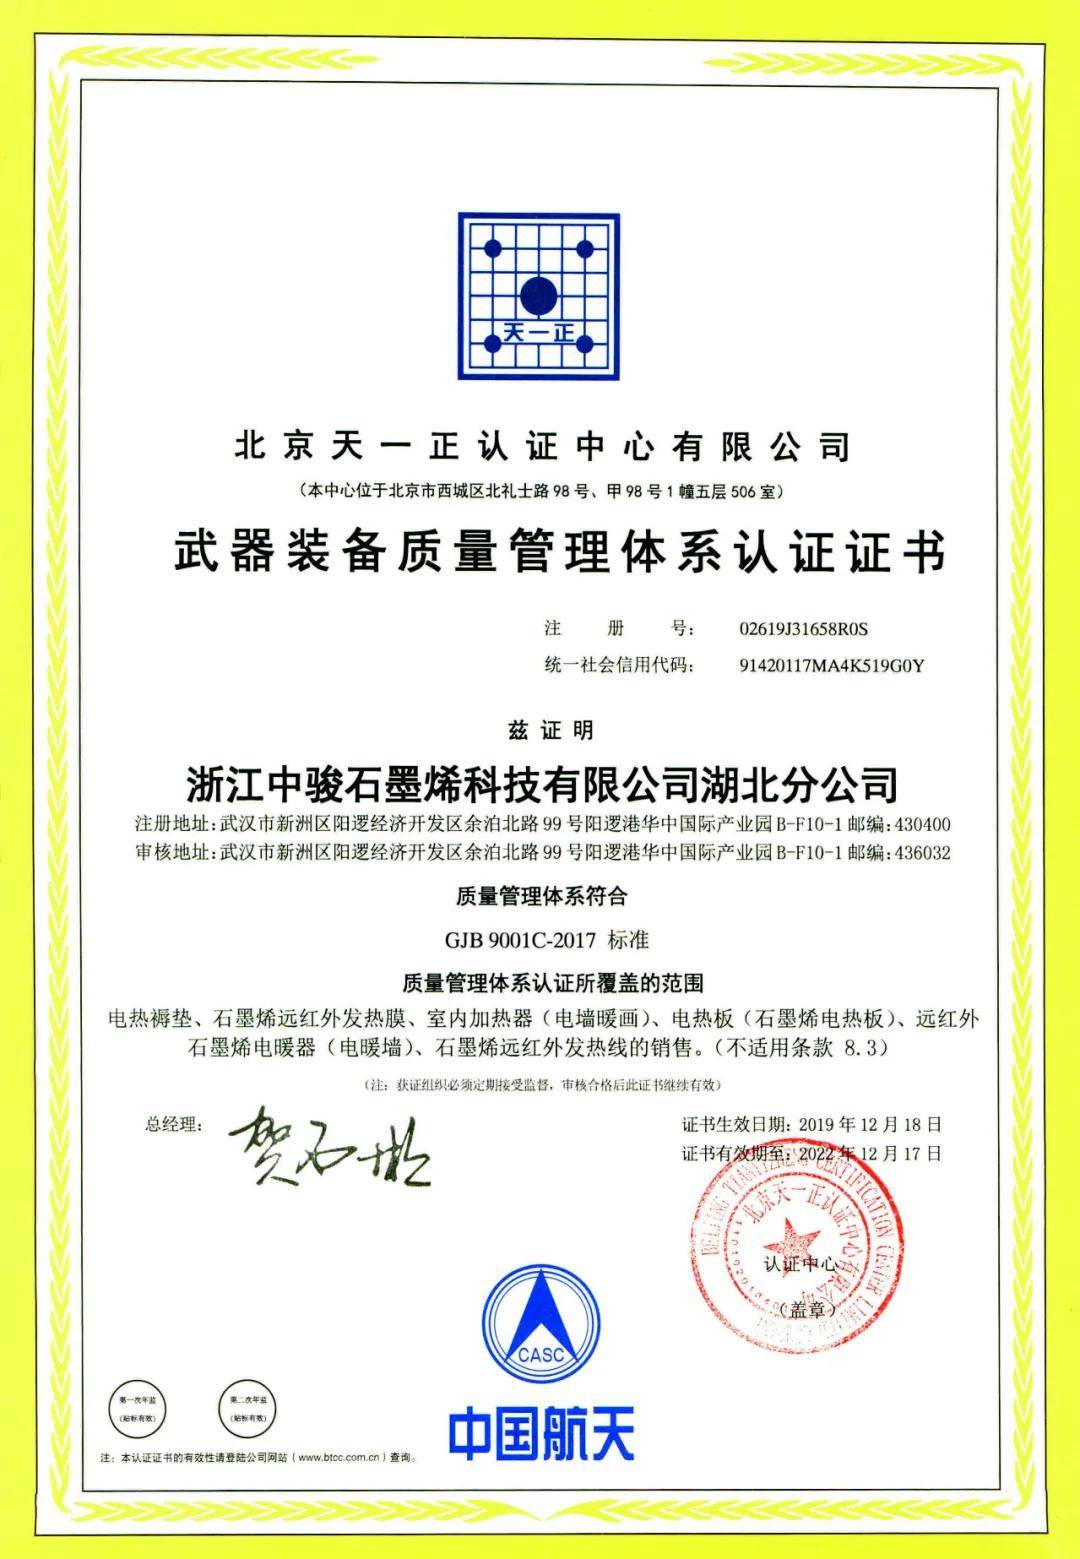 暖玛士石墨烯为中国兵器工业集团西北工业集团公司提供供暖改造服务